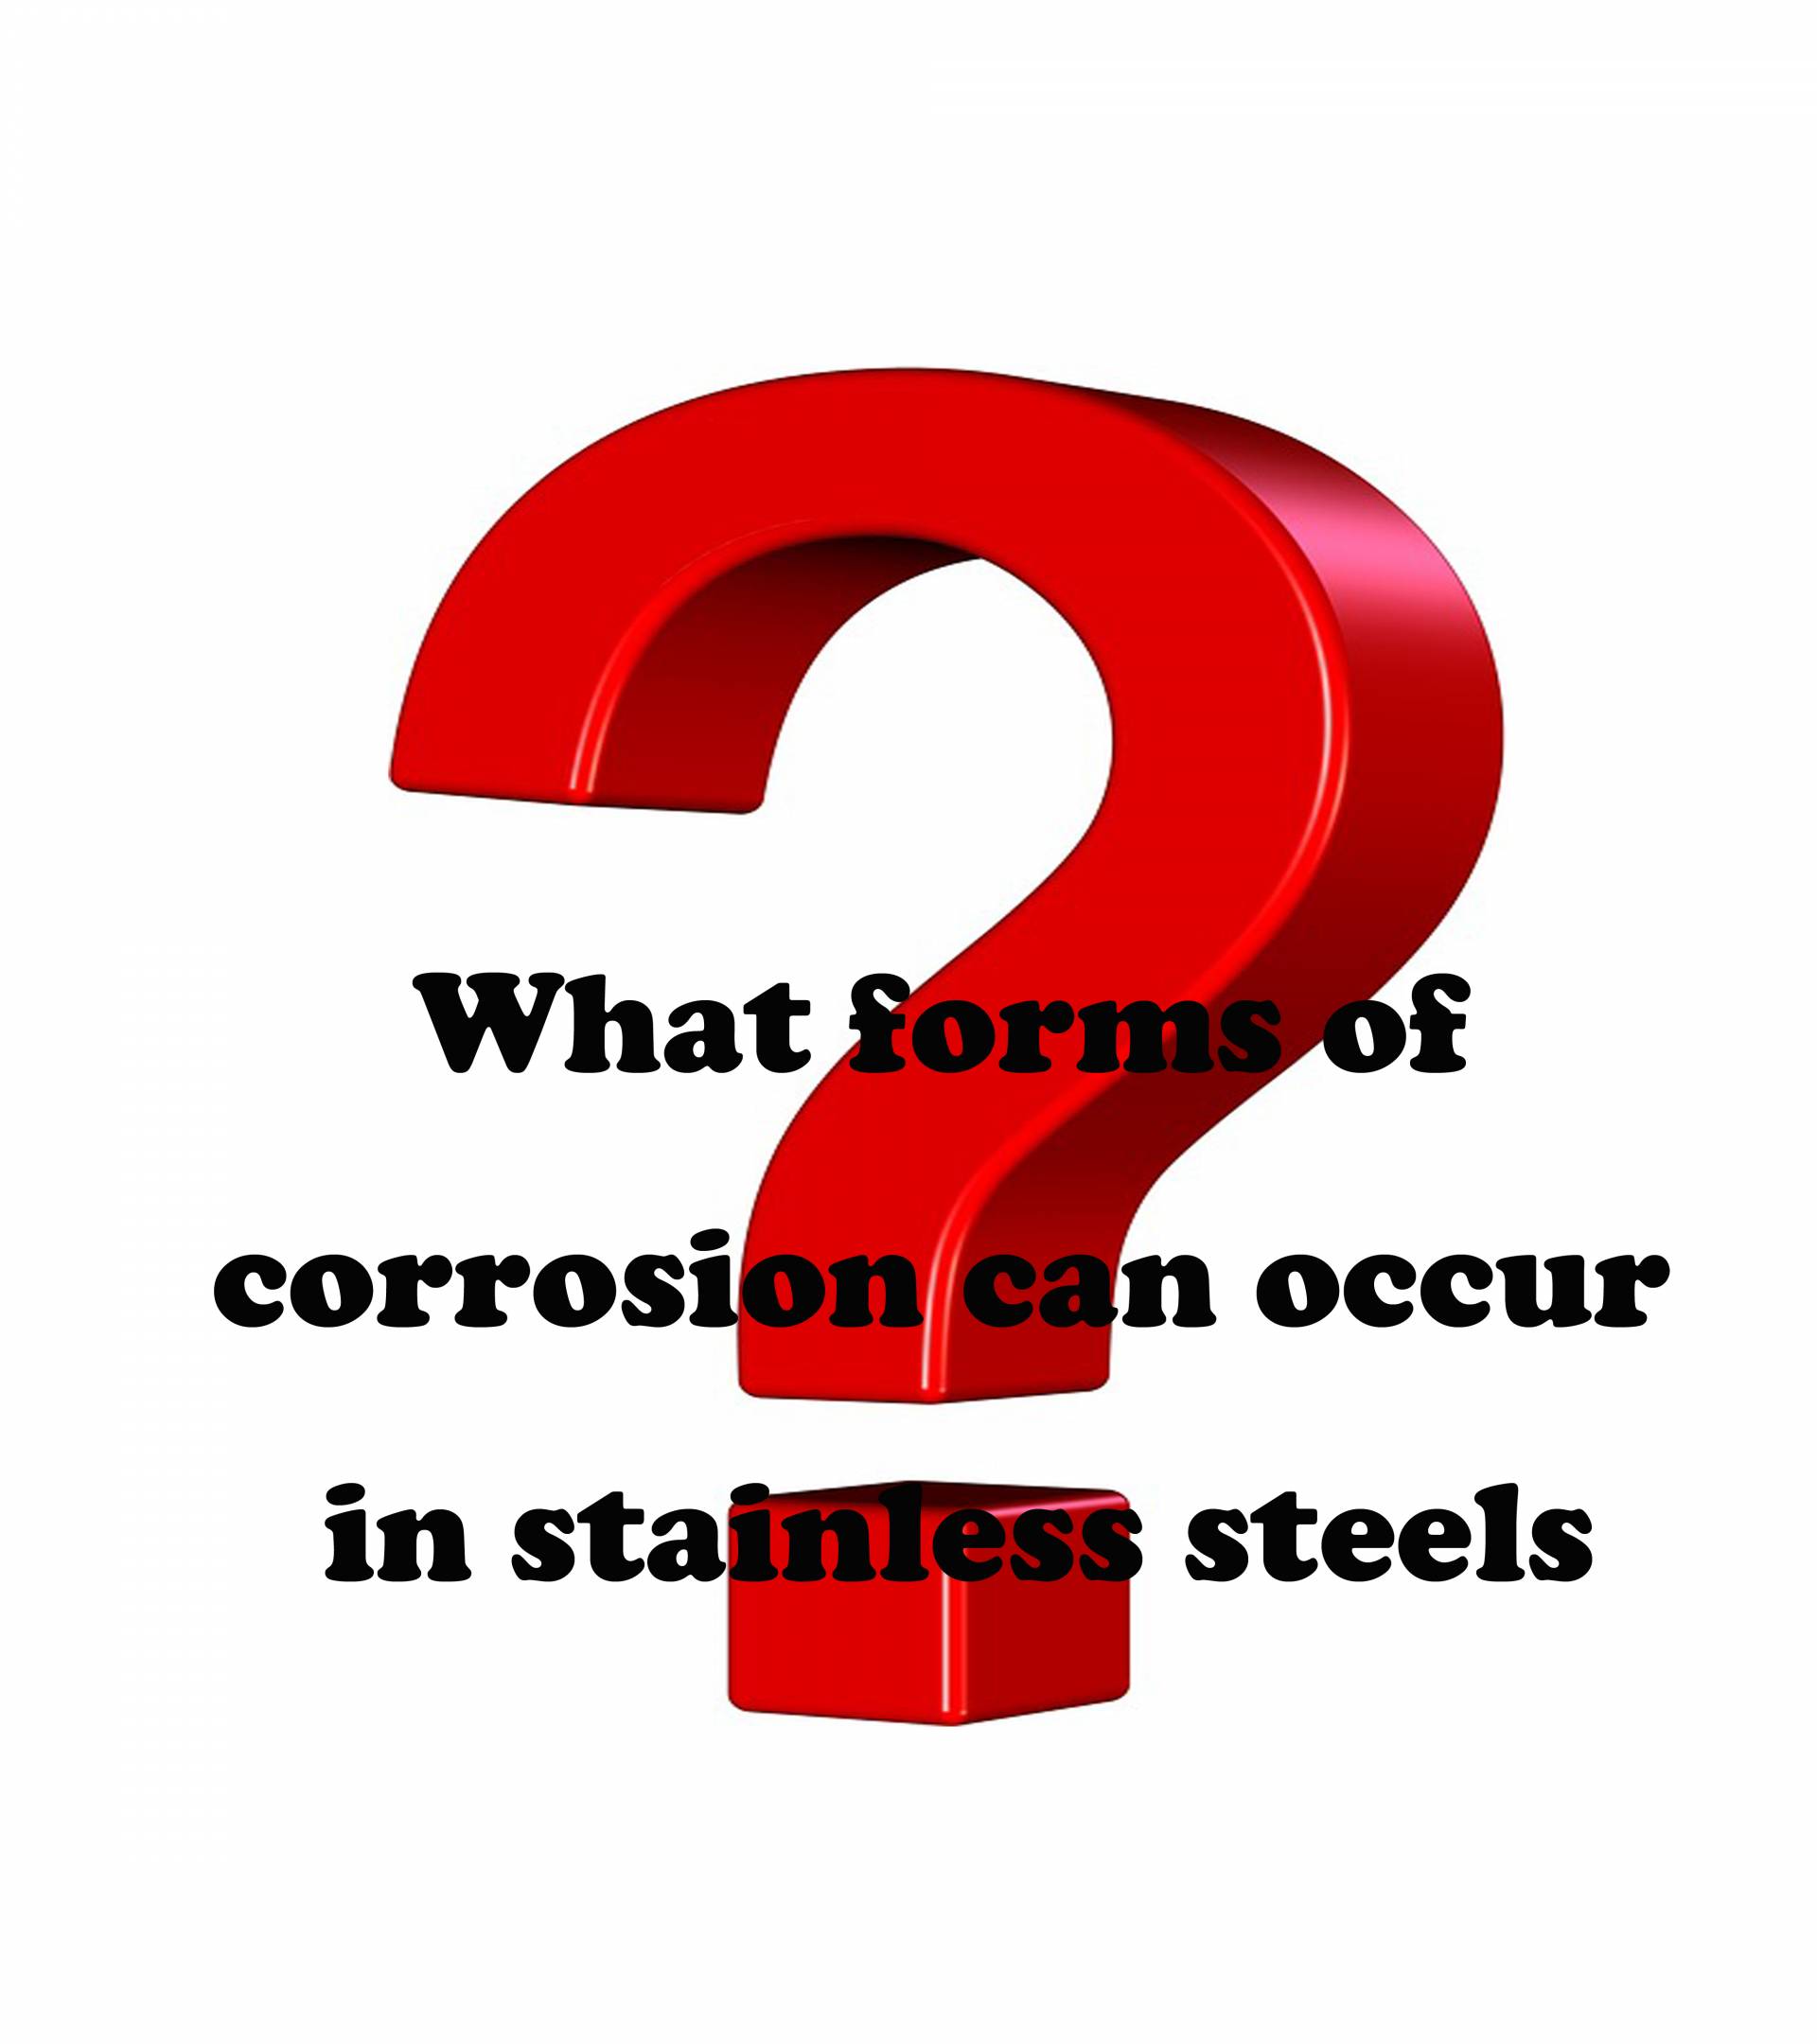 Quais formas de corrosão podem ocorrer em aços inoxidáveis?